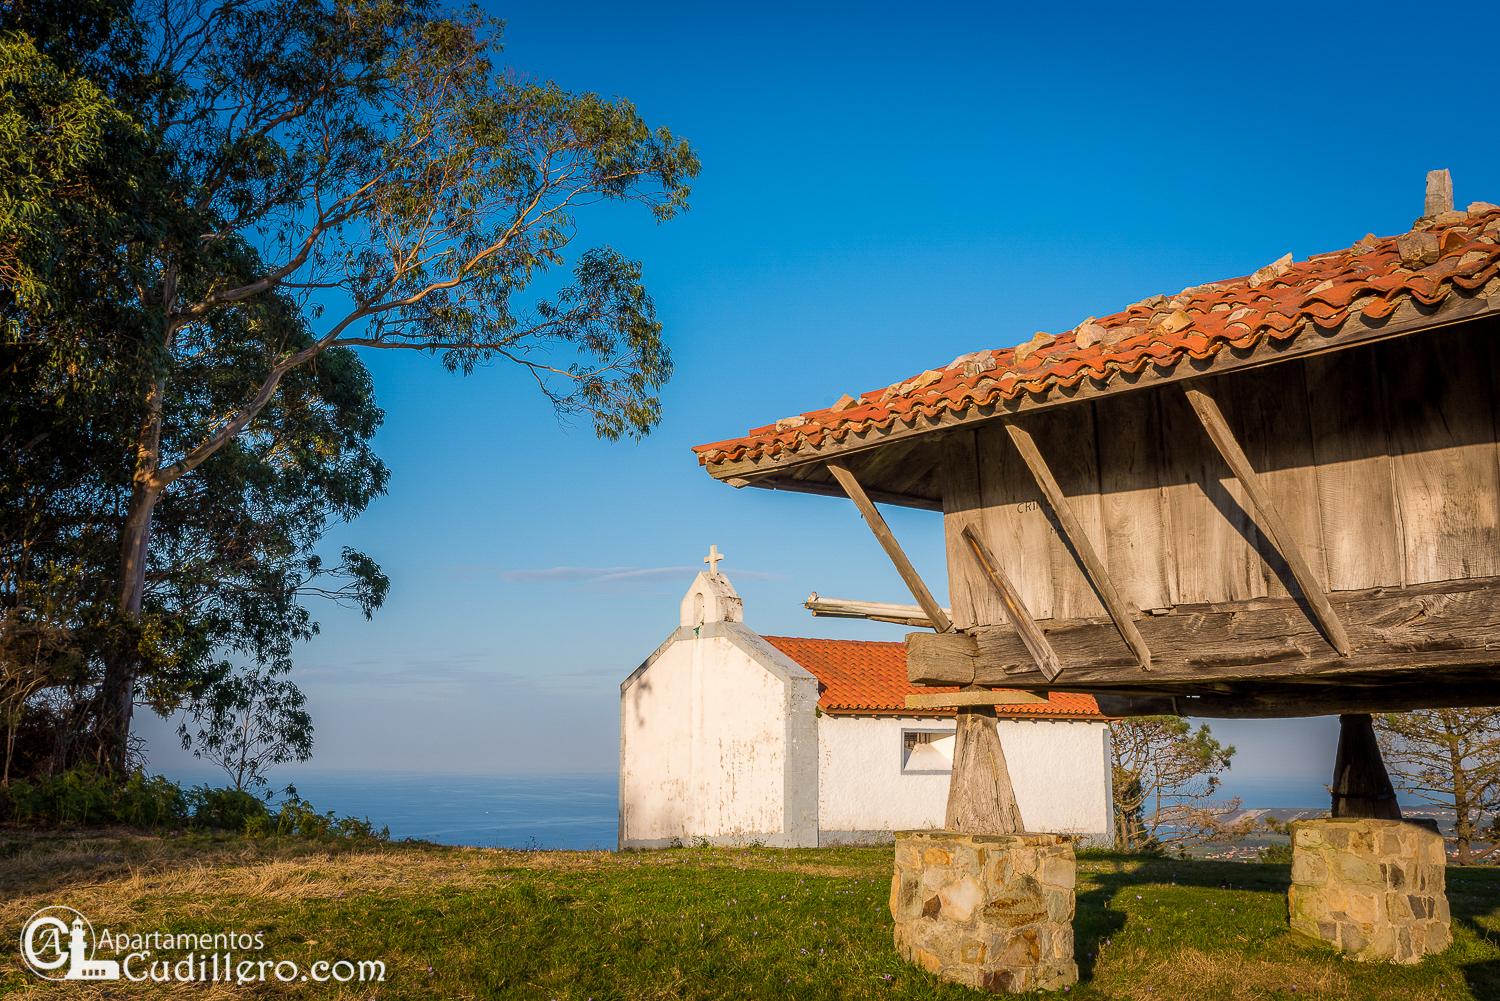 horreo, ermita, monte en Cudillero, mirador de Asturias, mirador del Cantábrico, vacaciones asturias a, escapada a Cudillero